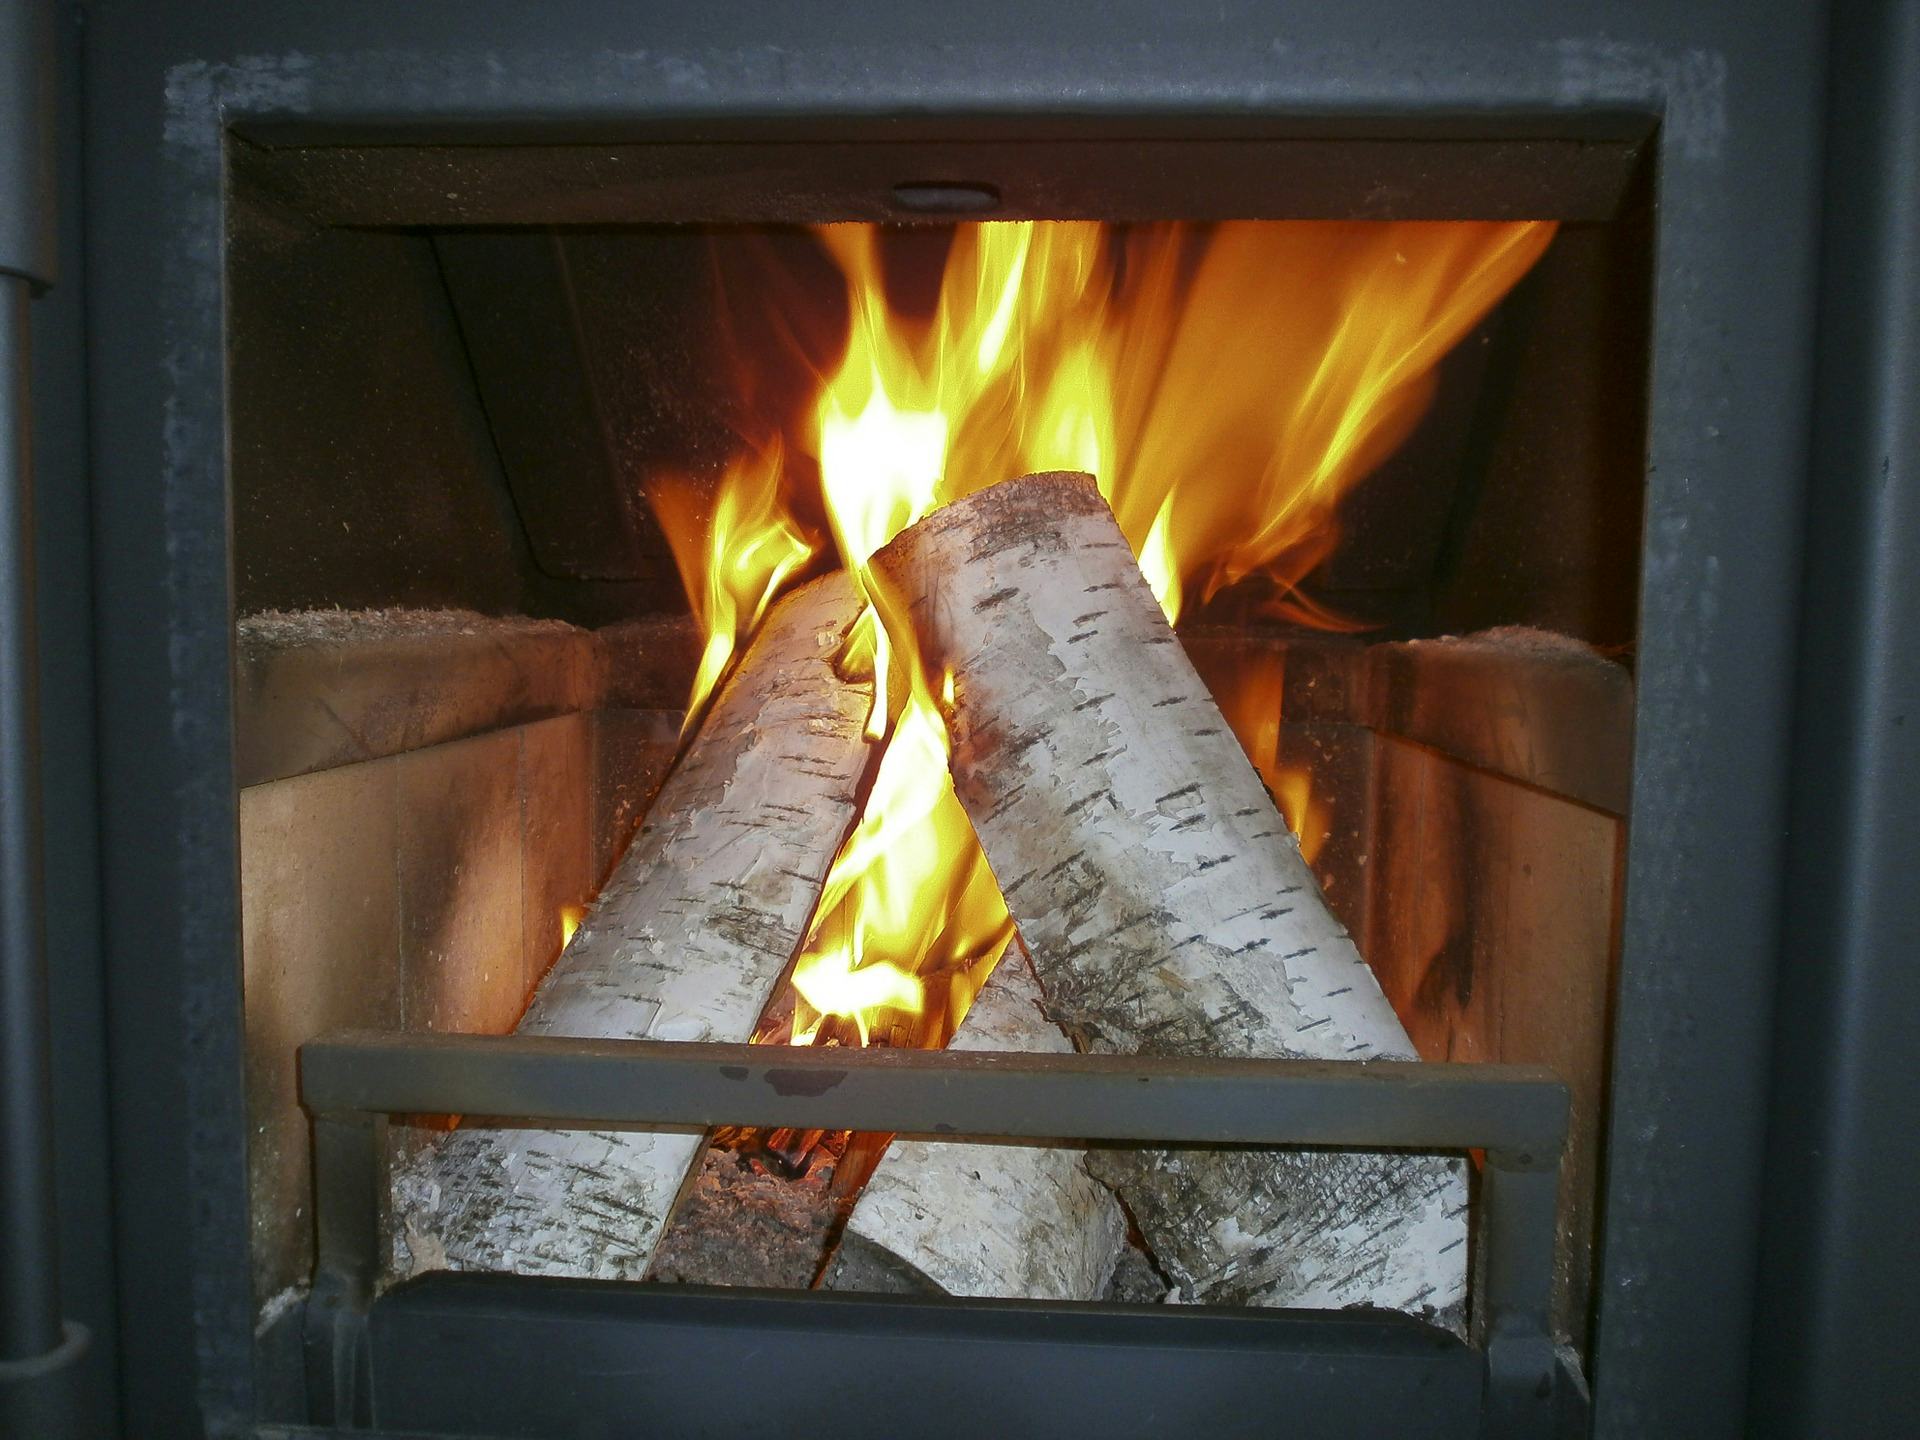 Univé: ‘Onervaren houtstoker vaak onbewust van brandrisico’s’